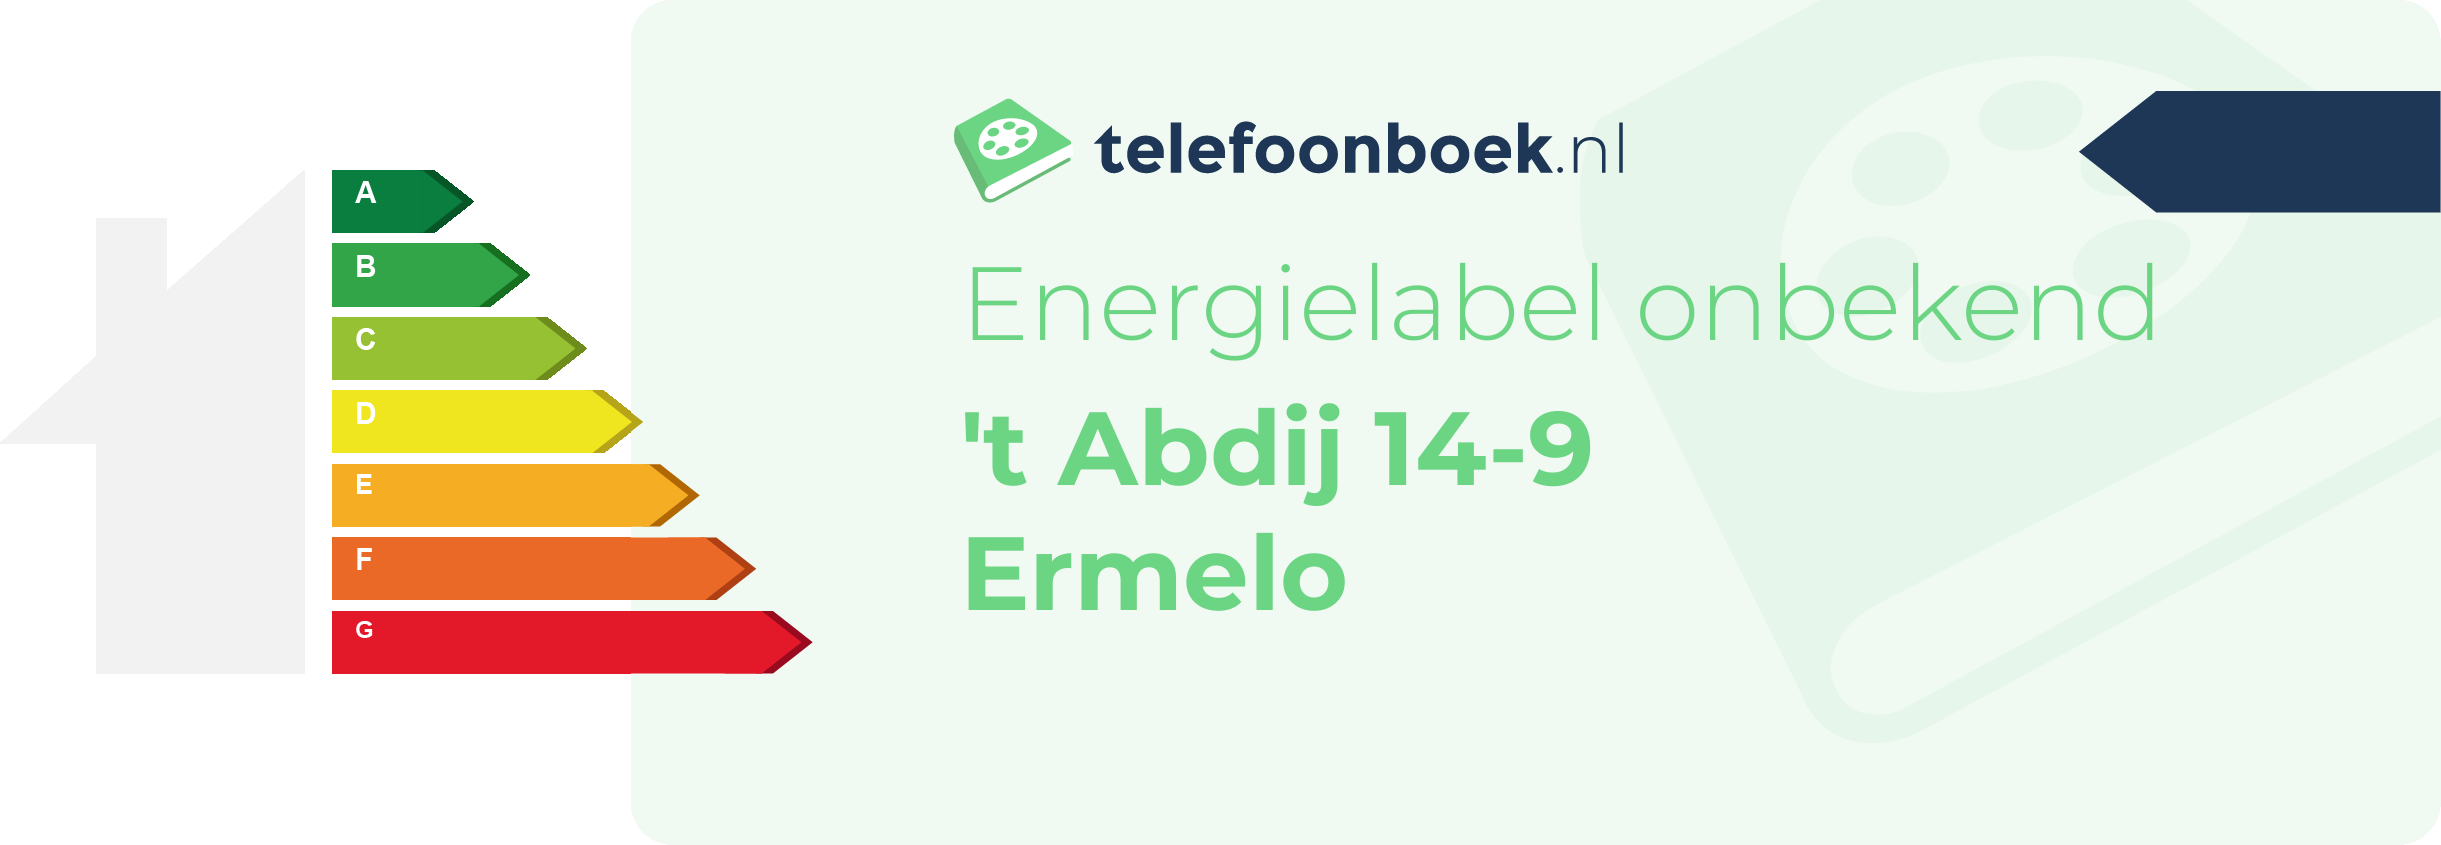 Energielabel 't Abdij 14-9 Ermelo